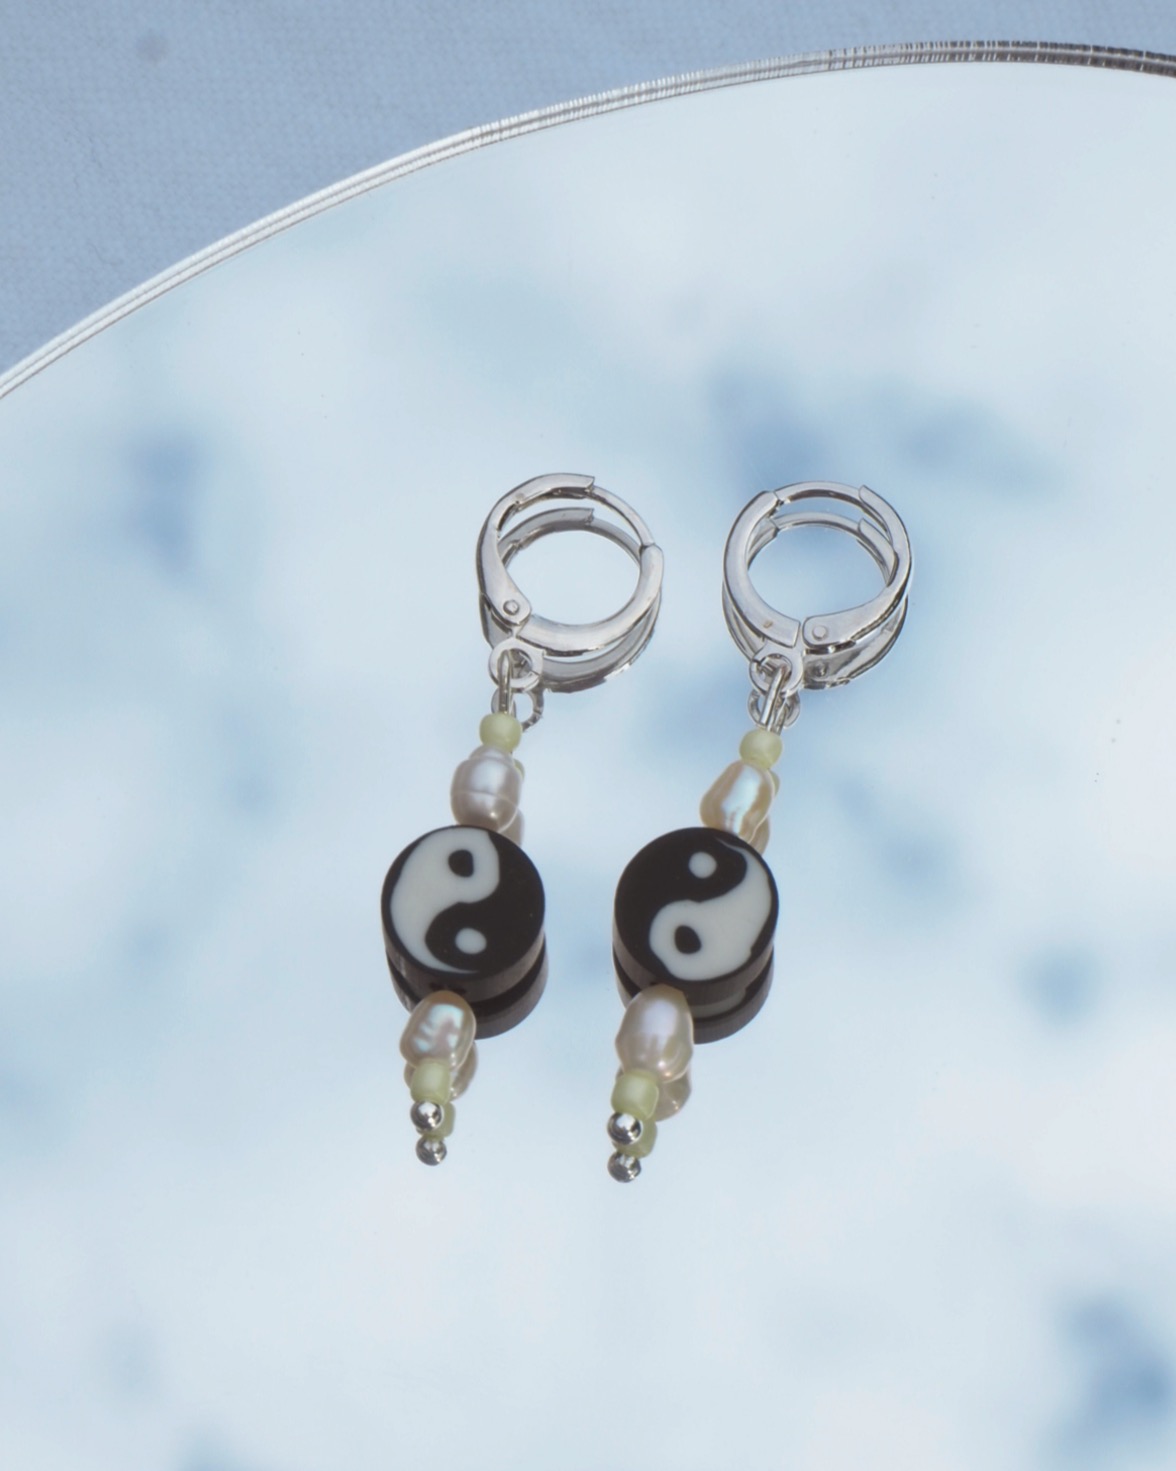 yin yang earrings